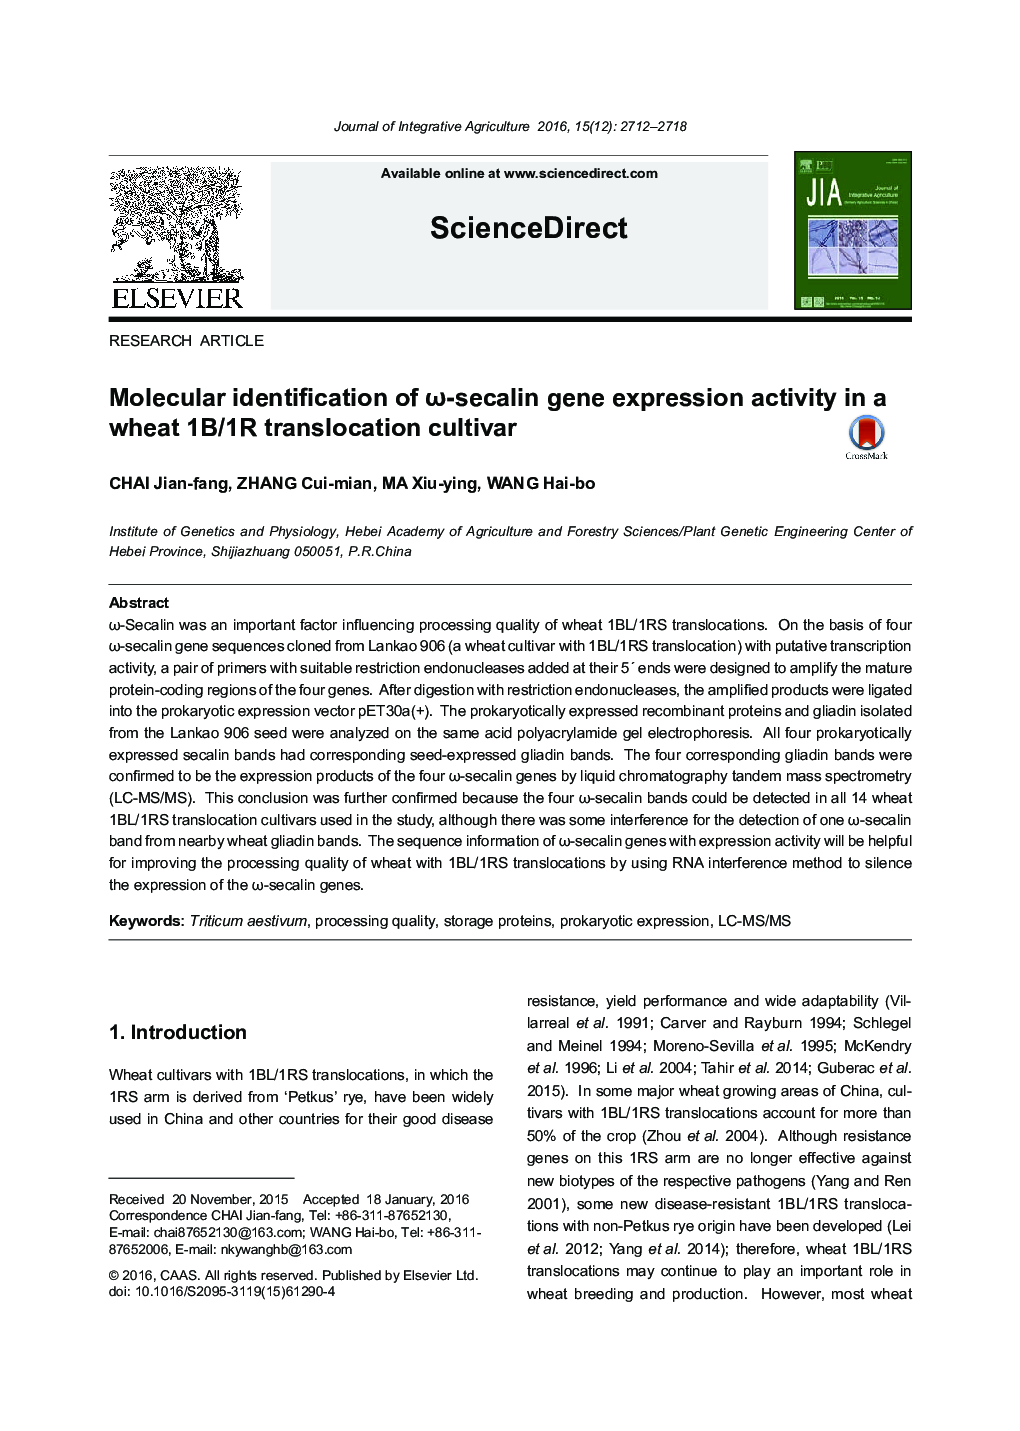 Molecular identification of Ï-secalin gene expression activity in a wheat 1B/1R translocation cultivar